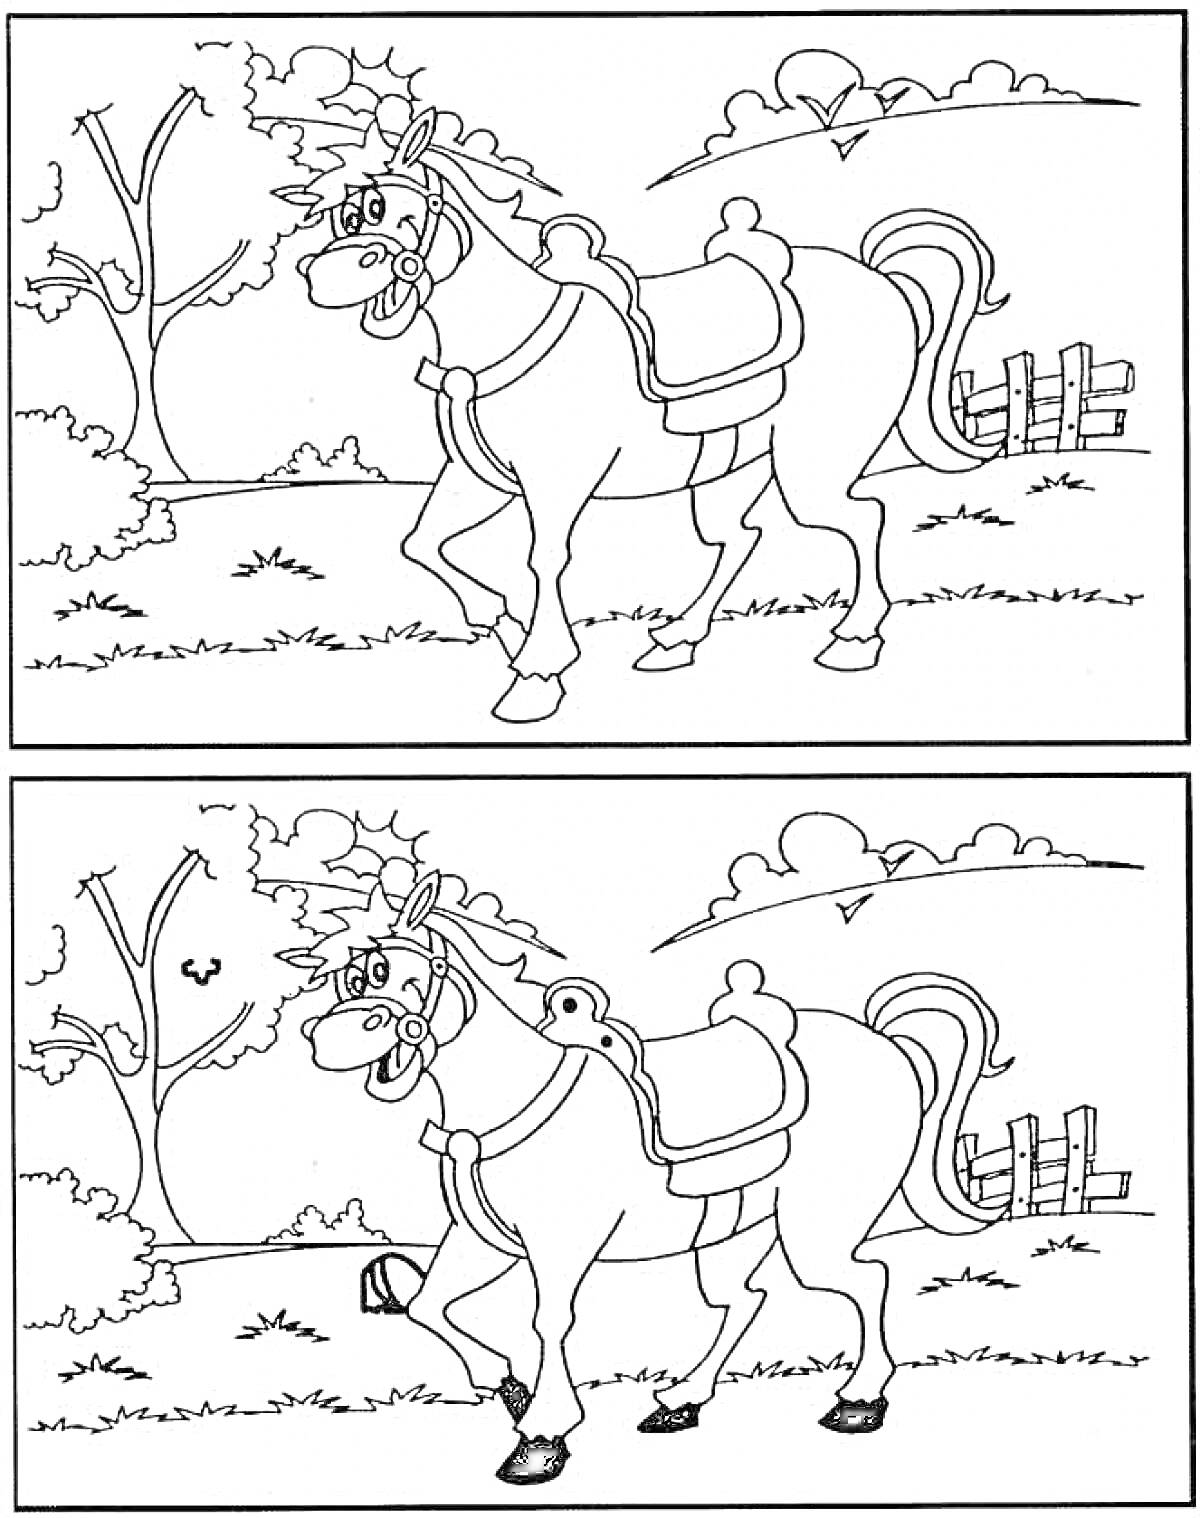 Раскраска Найди отличия - Лошадь на прогулке по лугу с деревом, птицей, забором и кустами